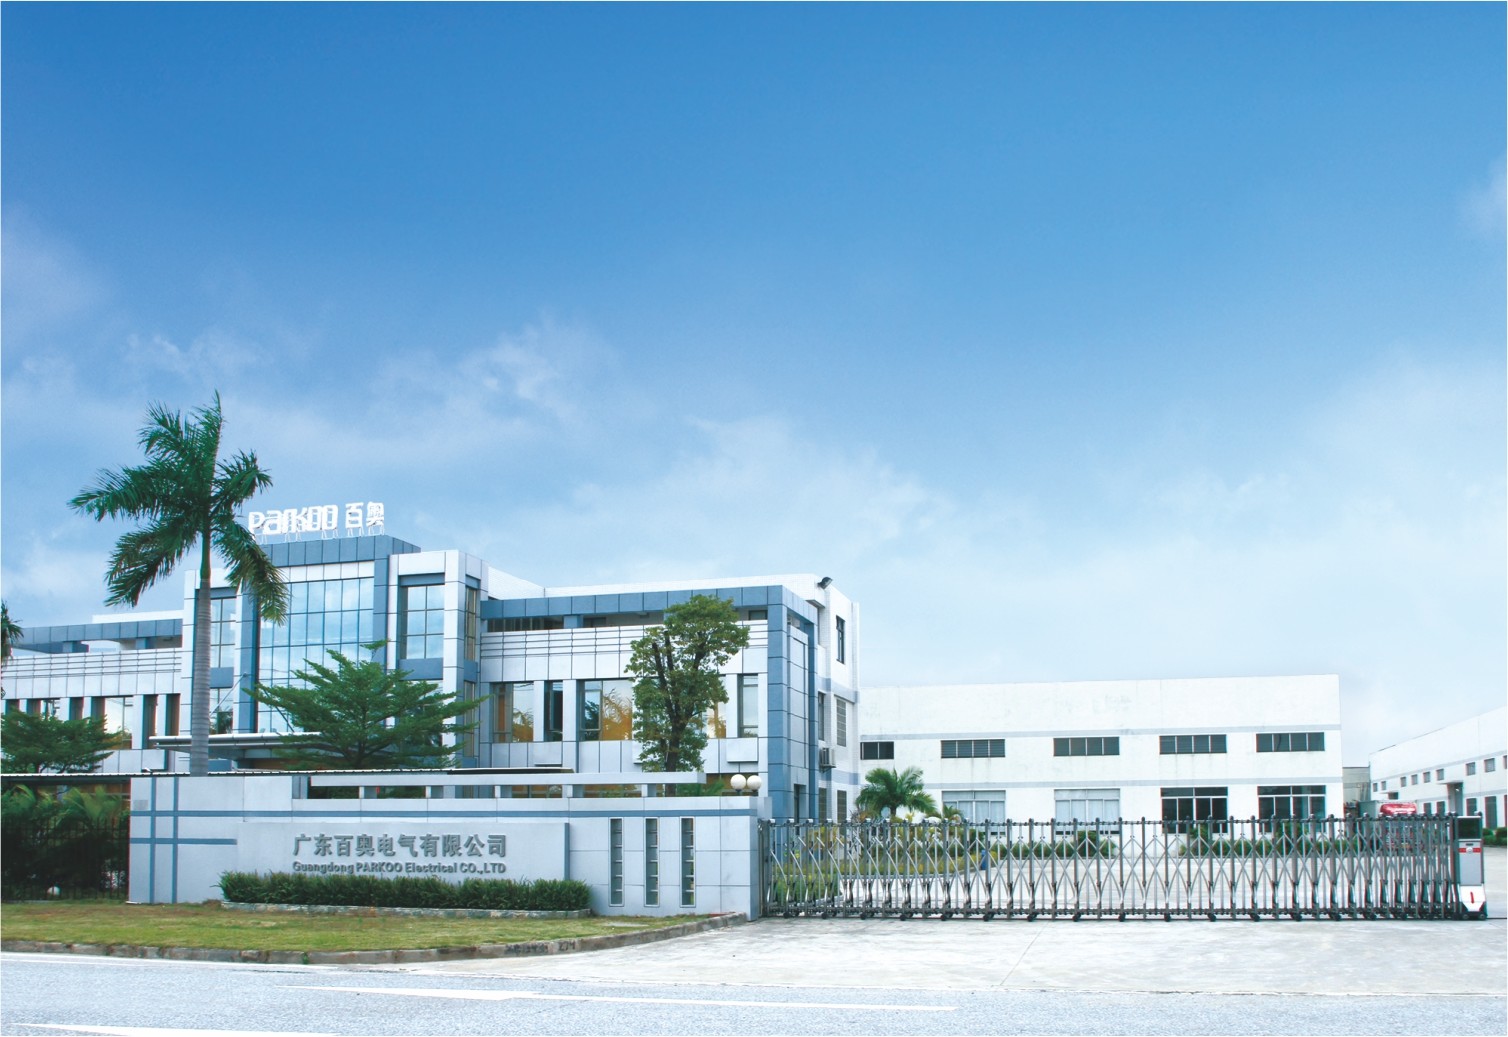 Guangzhou DongAo Electrical Co., Ltd.